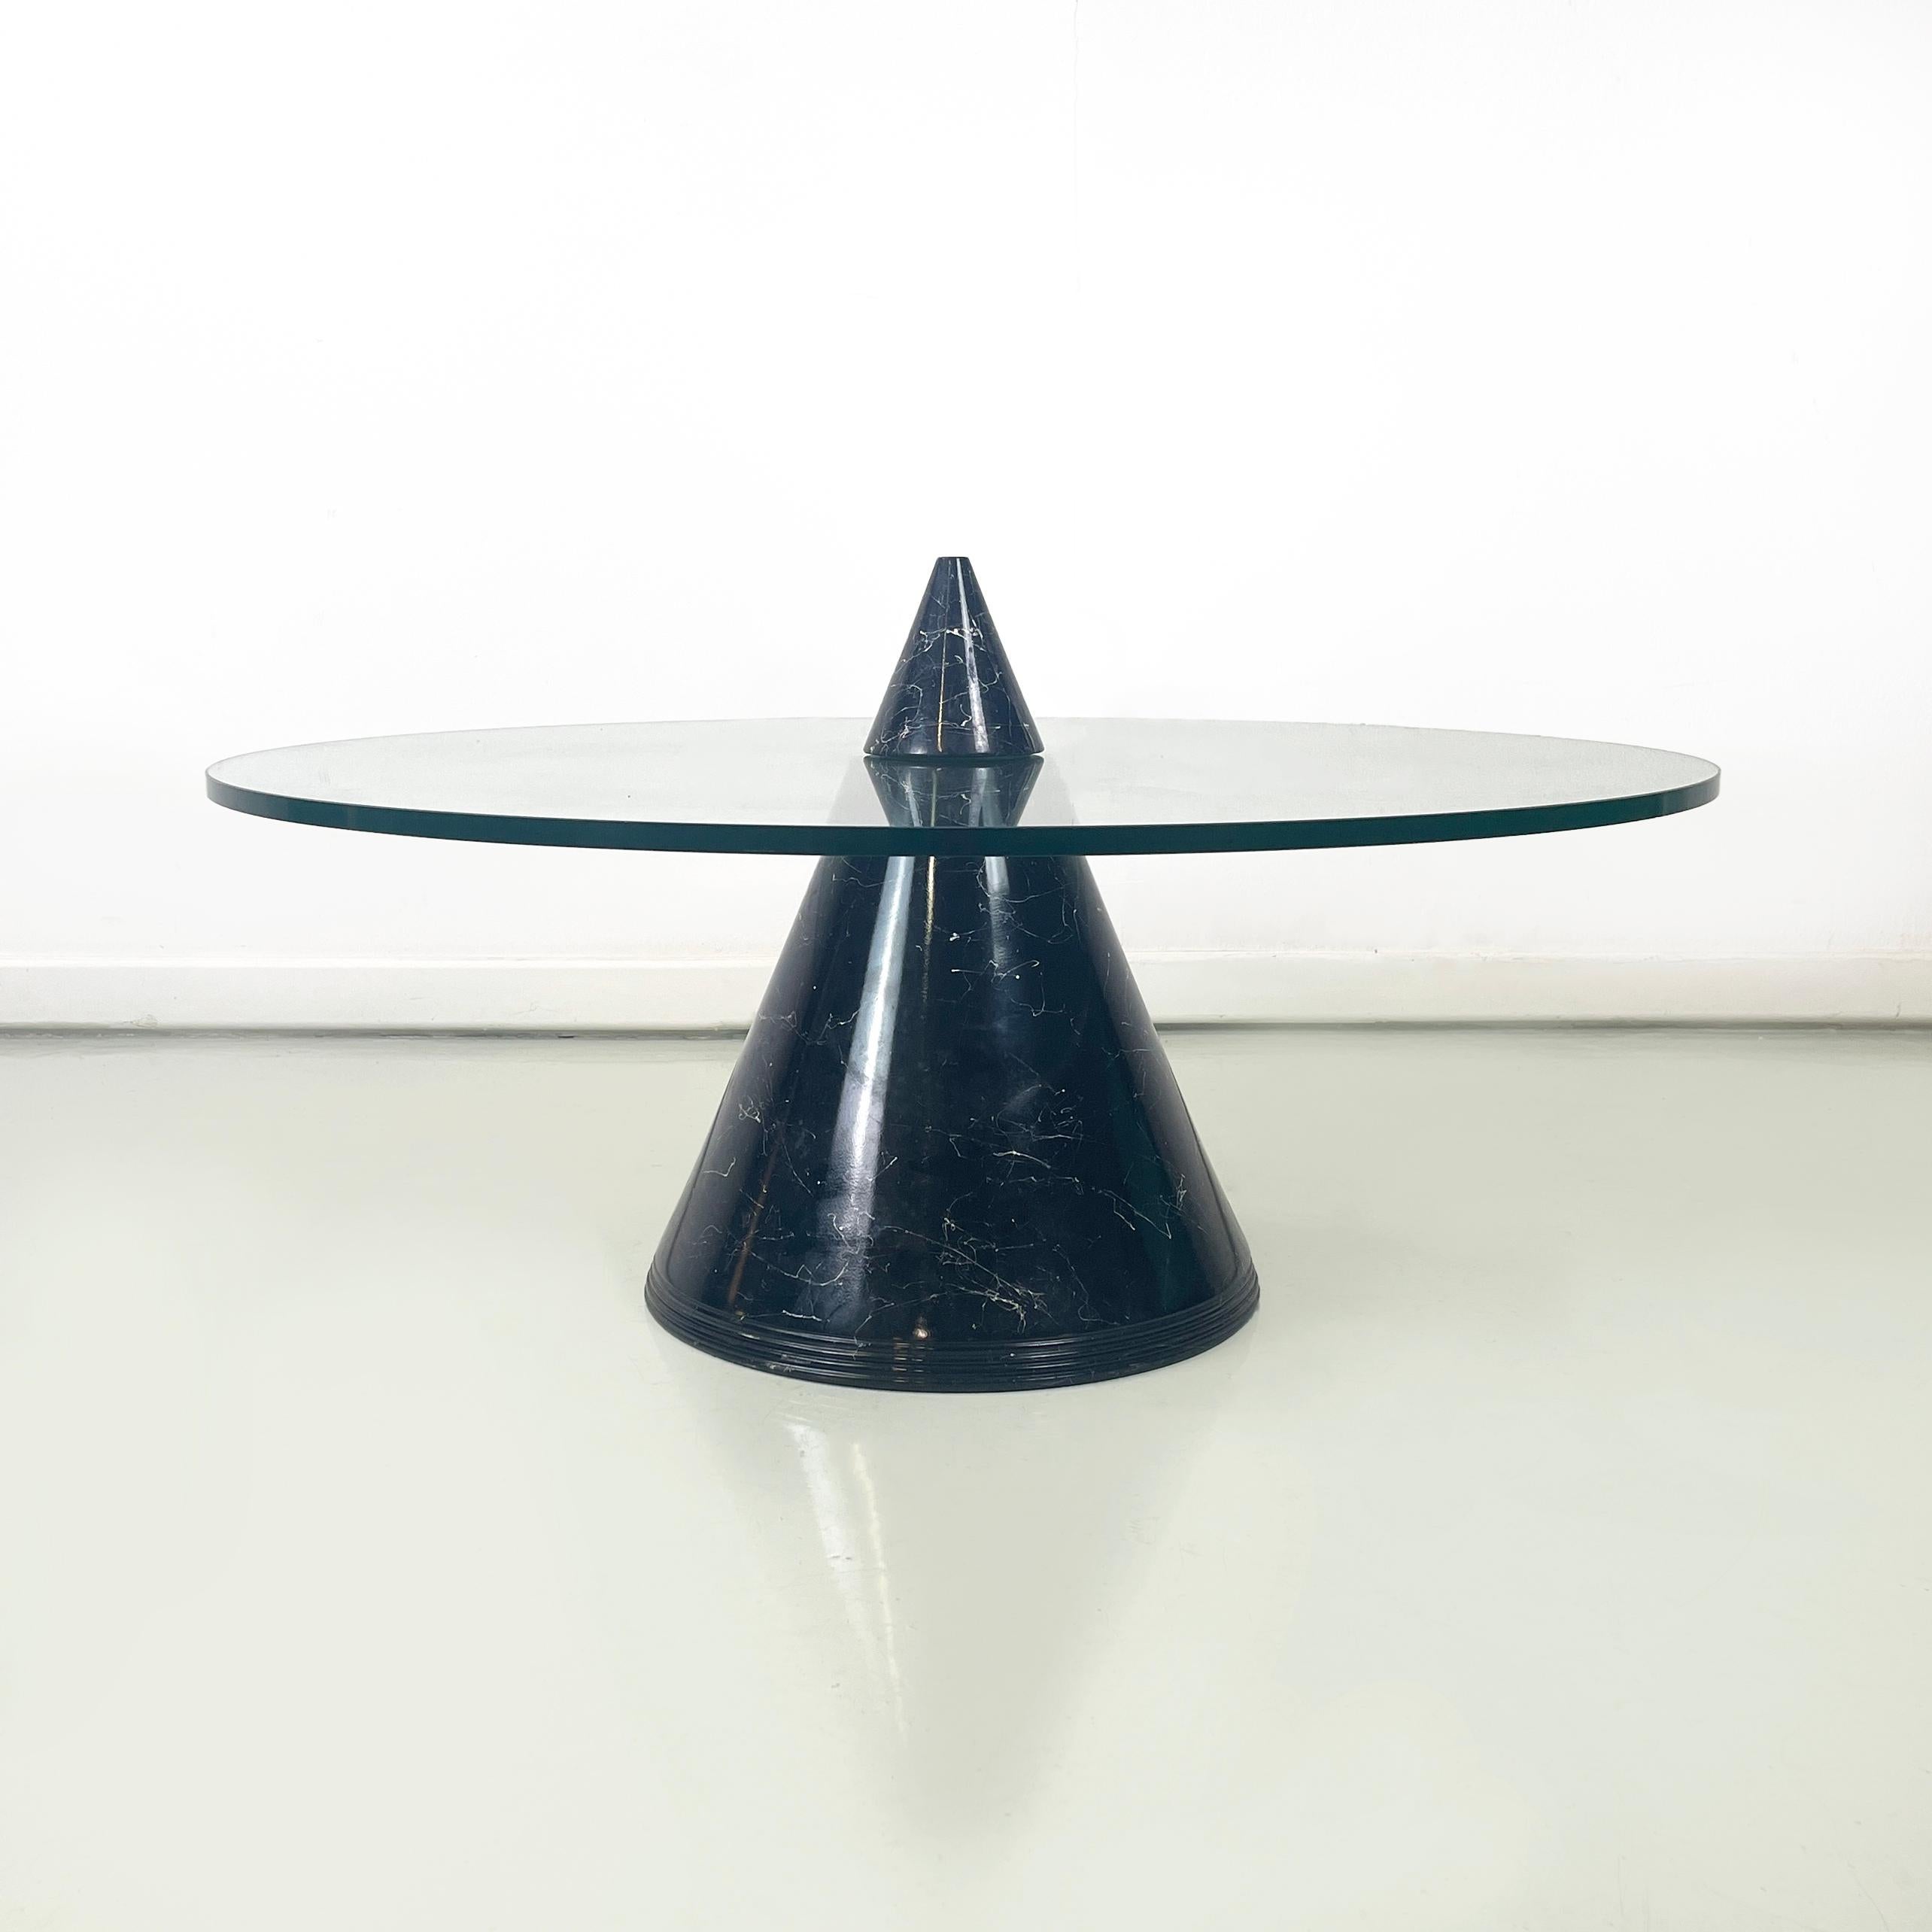 Table basse ronde moderne italienne en verre avec base conique en marbre noir, années 1980
Table basse avec plateau en verre épais et rond. La structure conique, divisée en deux par le sommet, est recouverte de marbre noir.
1980 environ.
Condition